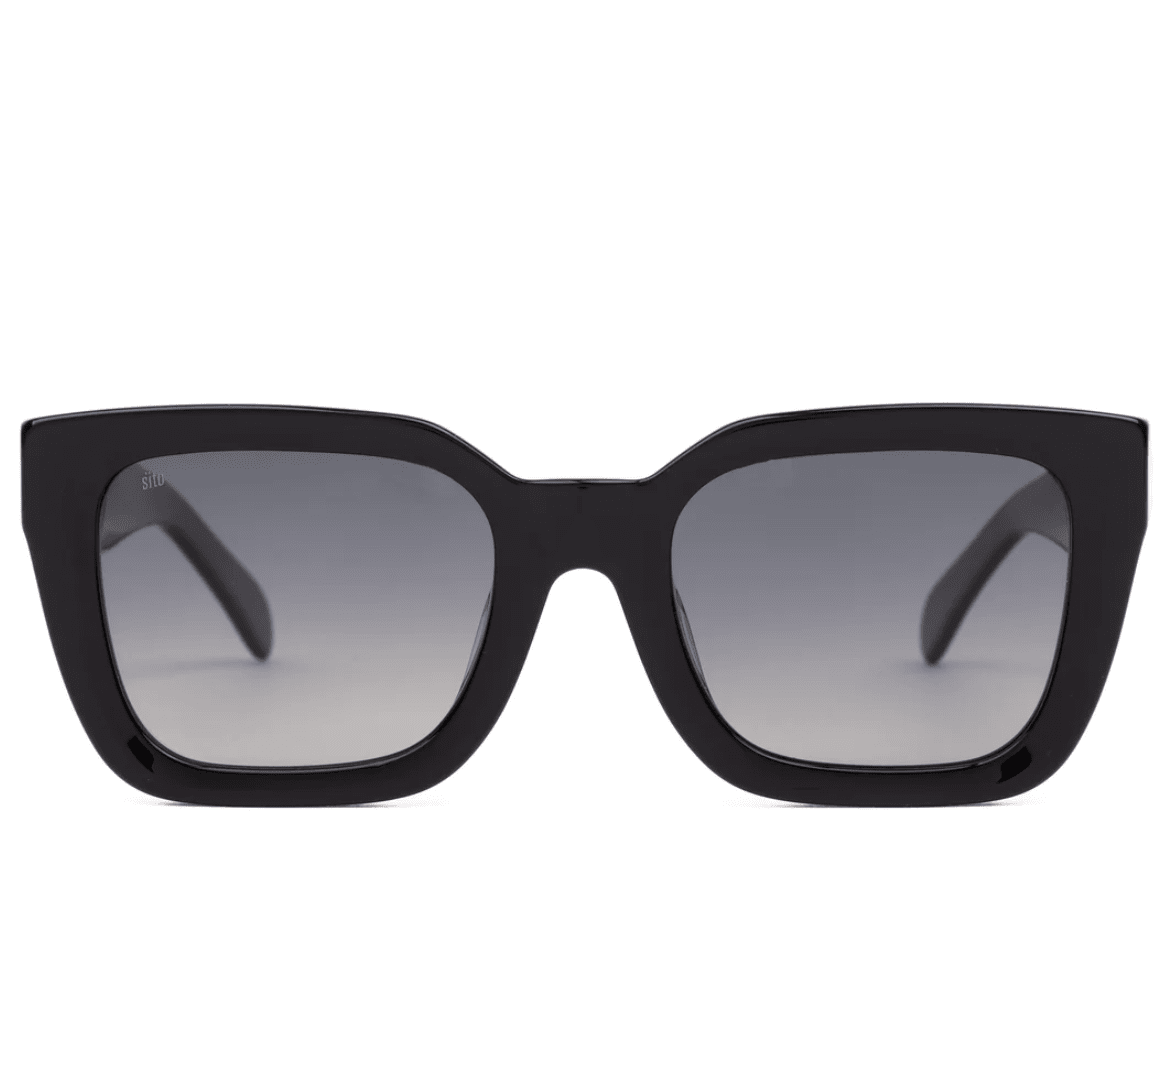 Harlow-Black Sunglasses Sito 